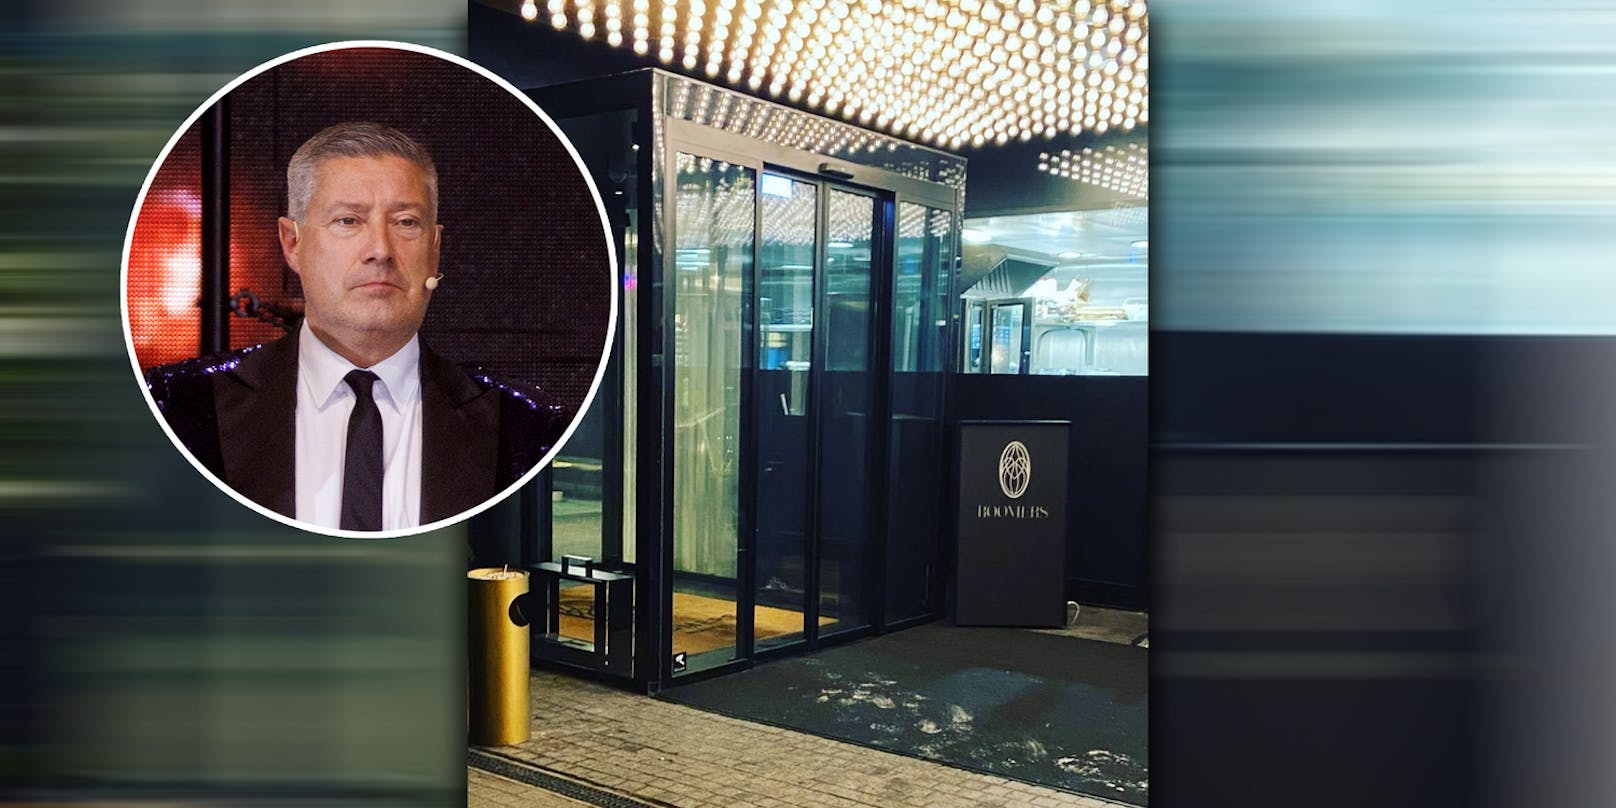 RTL-Star schimpft über 5-Sterne-Hotel: "Absolut meiden"